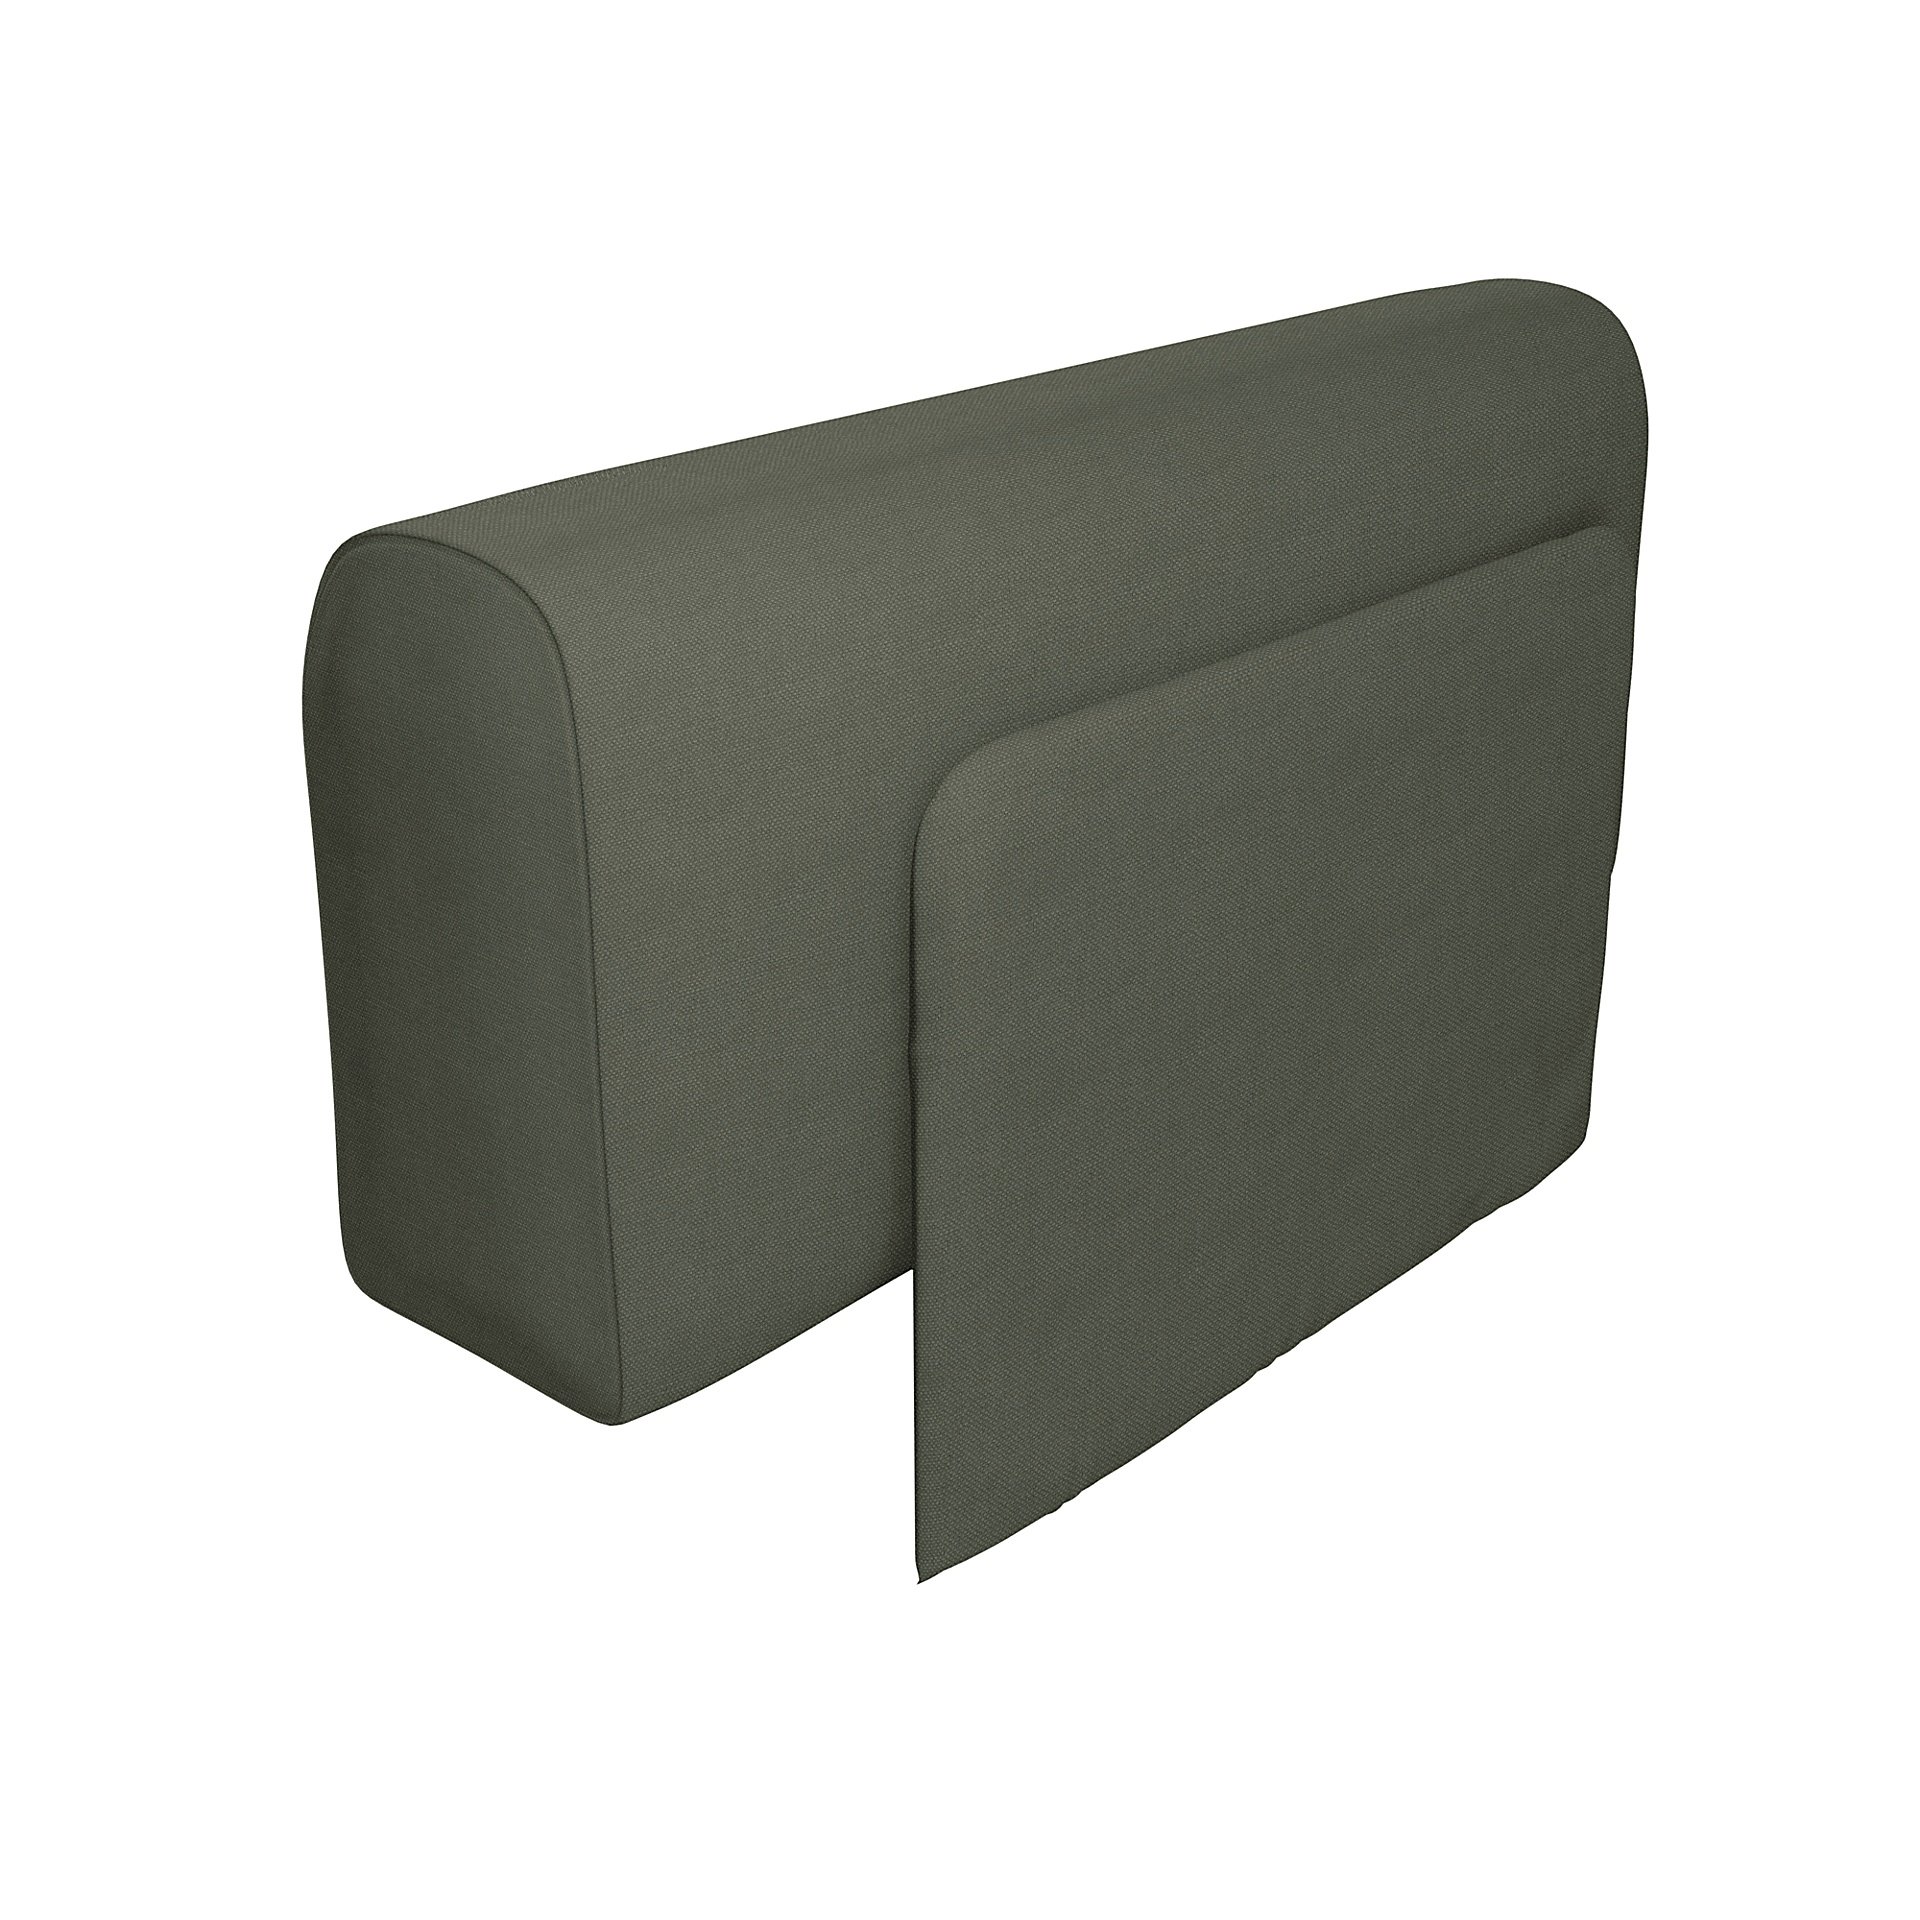 IKEA - Delaktig Armrest with Cushion Cover, Rosemary, Linen - Bemz